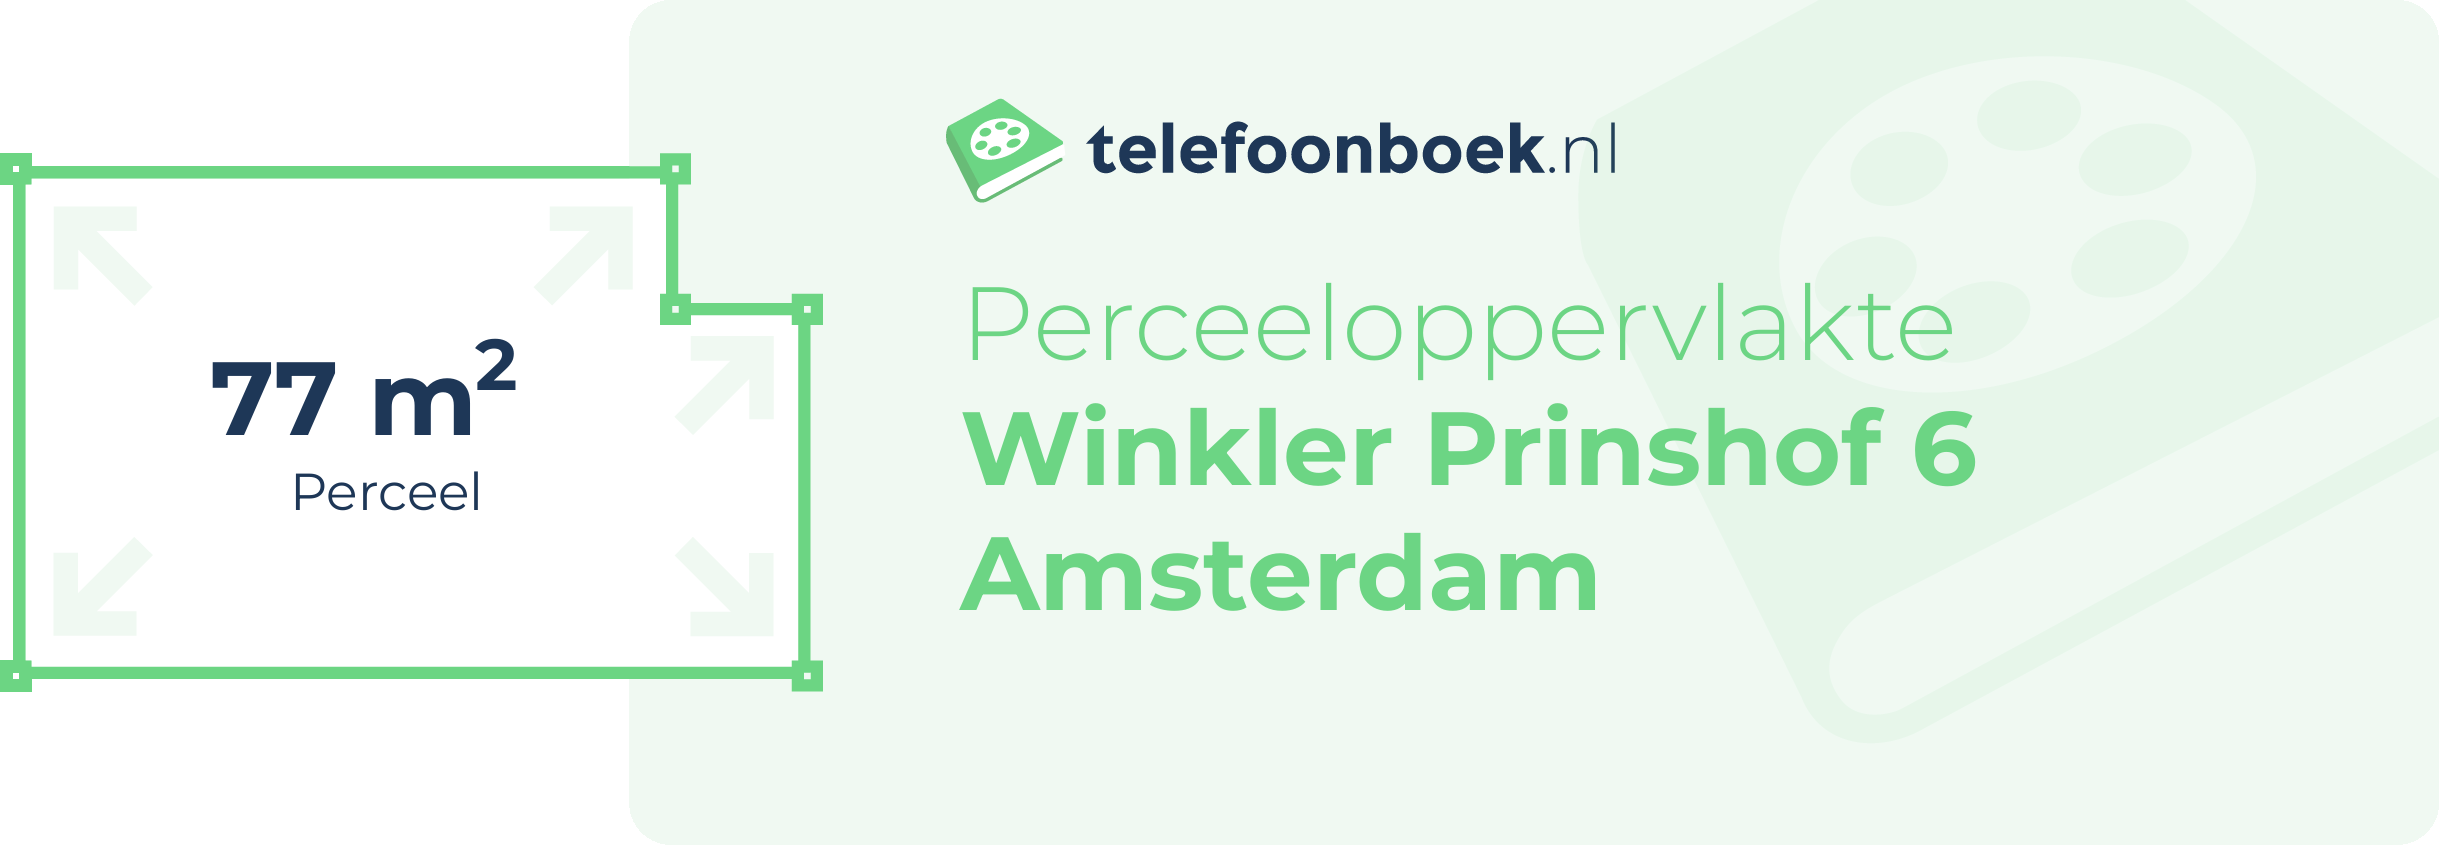 Perceeloppervlakte Winkler Prinshof 6 Amsterdam